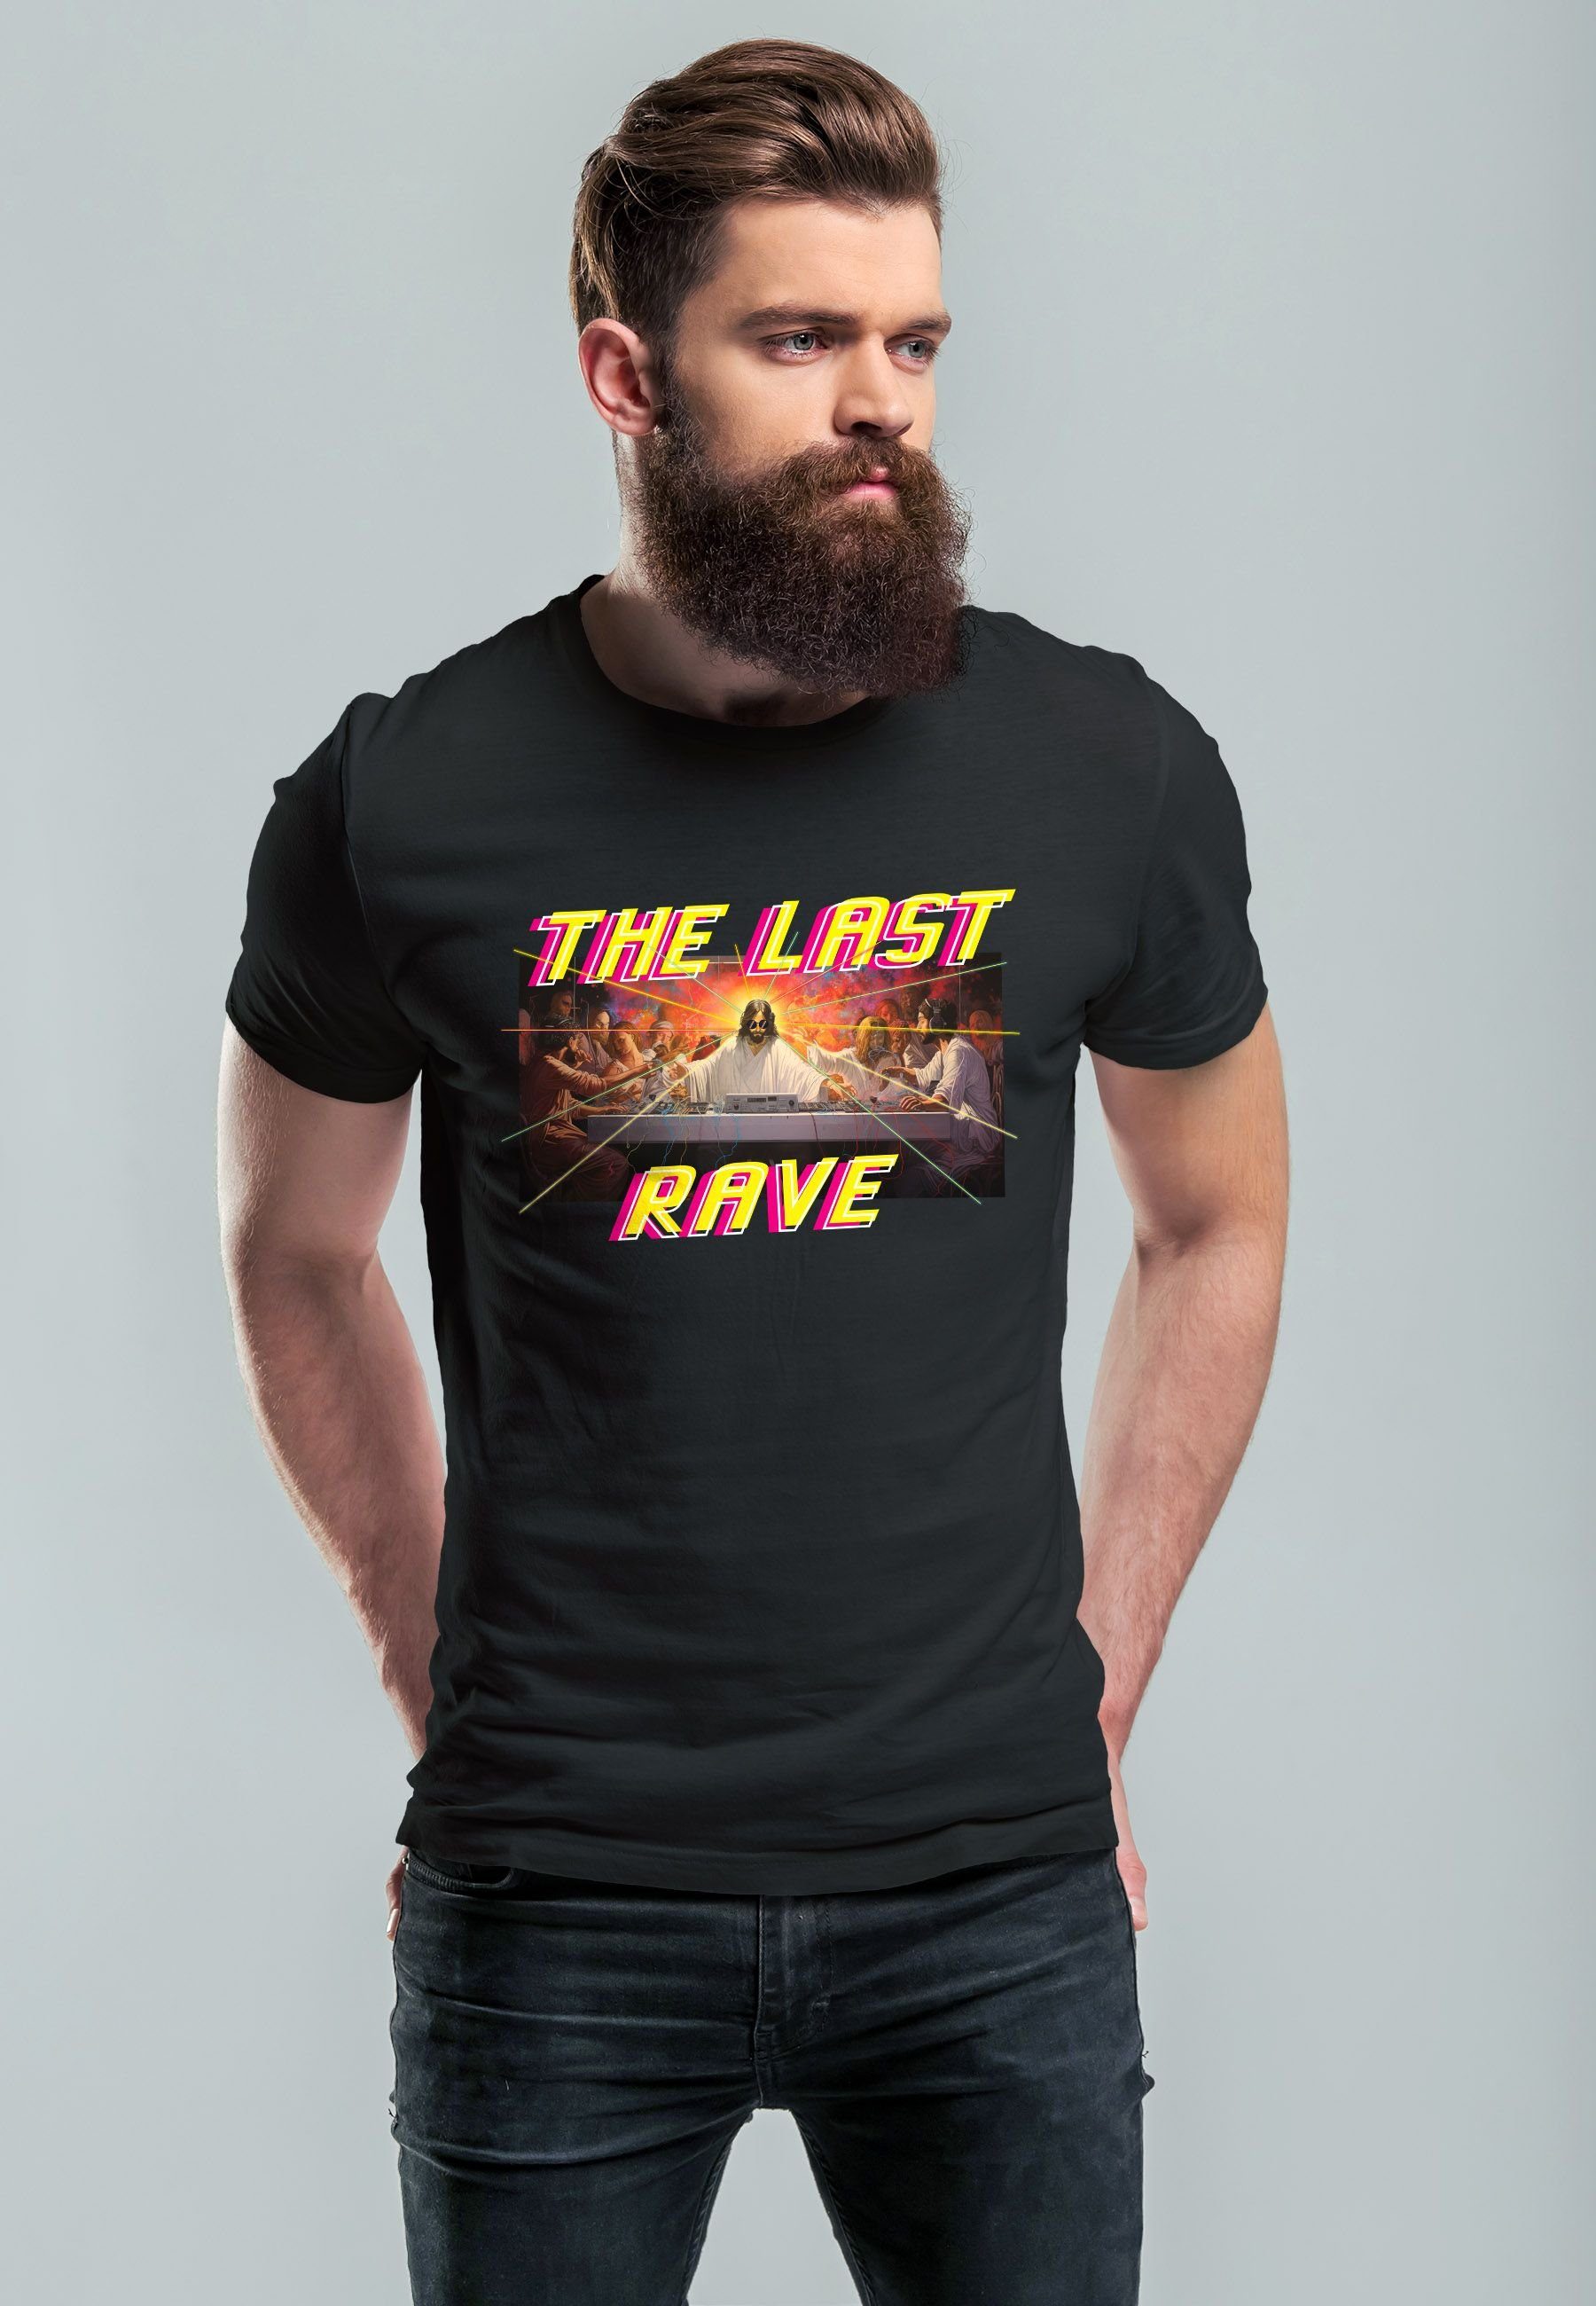 Rave letzte Last Abendmahl The T-Shirt mit Das Jesus Herren schwarz Techno Neverless Parodie Print-Shirt Print